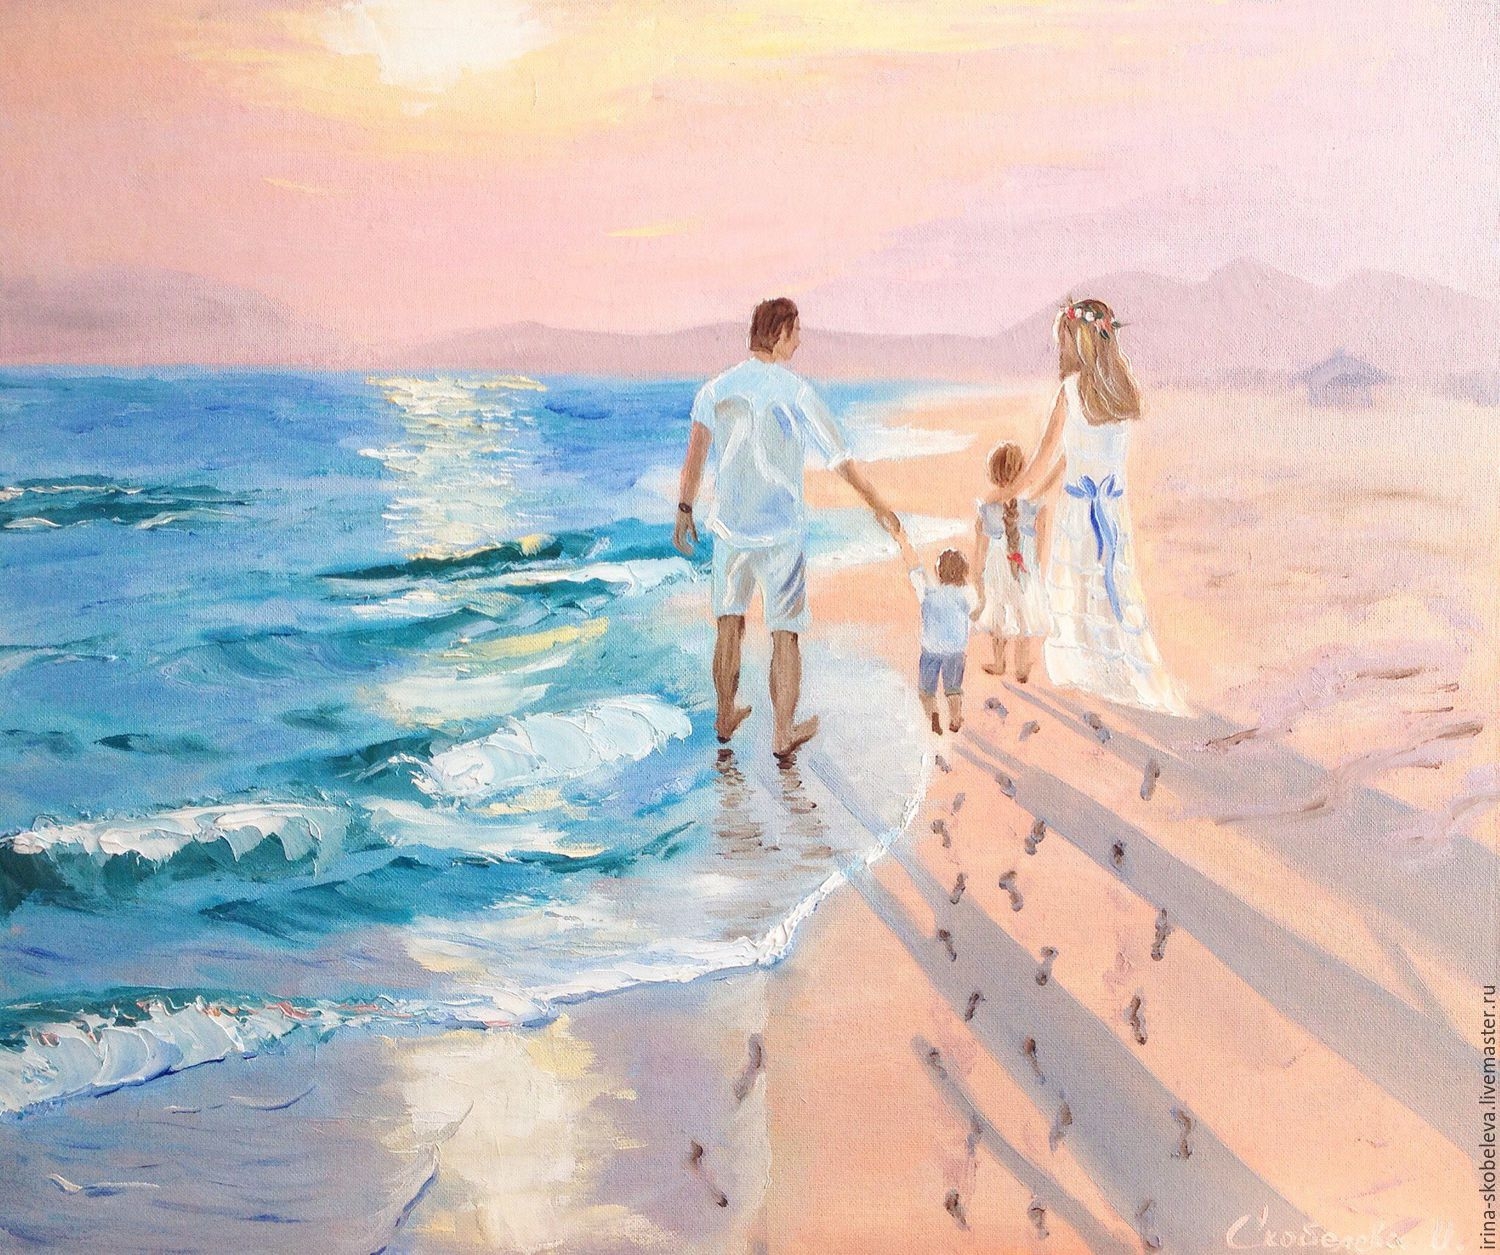 Мужчина и женщина смотрят на море, взявшись за руки